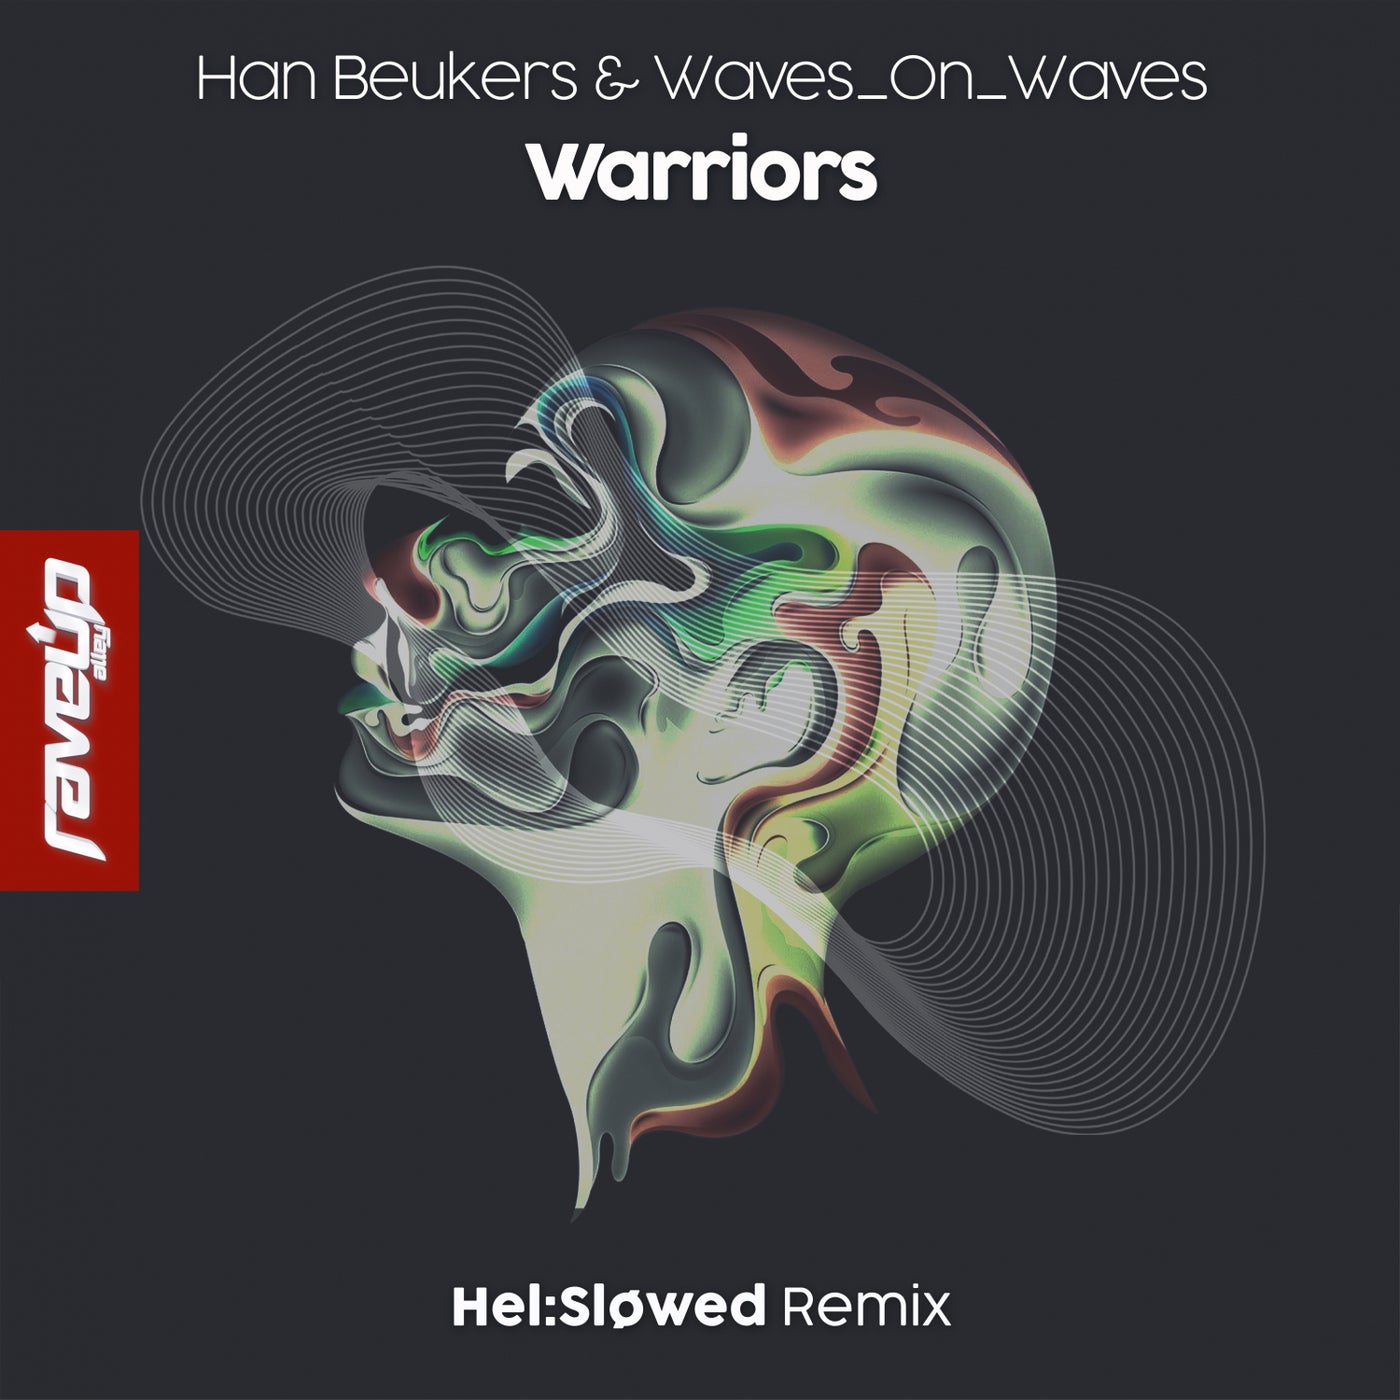 Han Beukers & Waves On Waves - Warriors (Hel:Sløwed Remix)